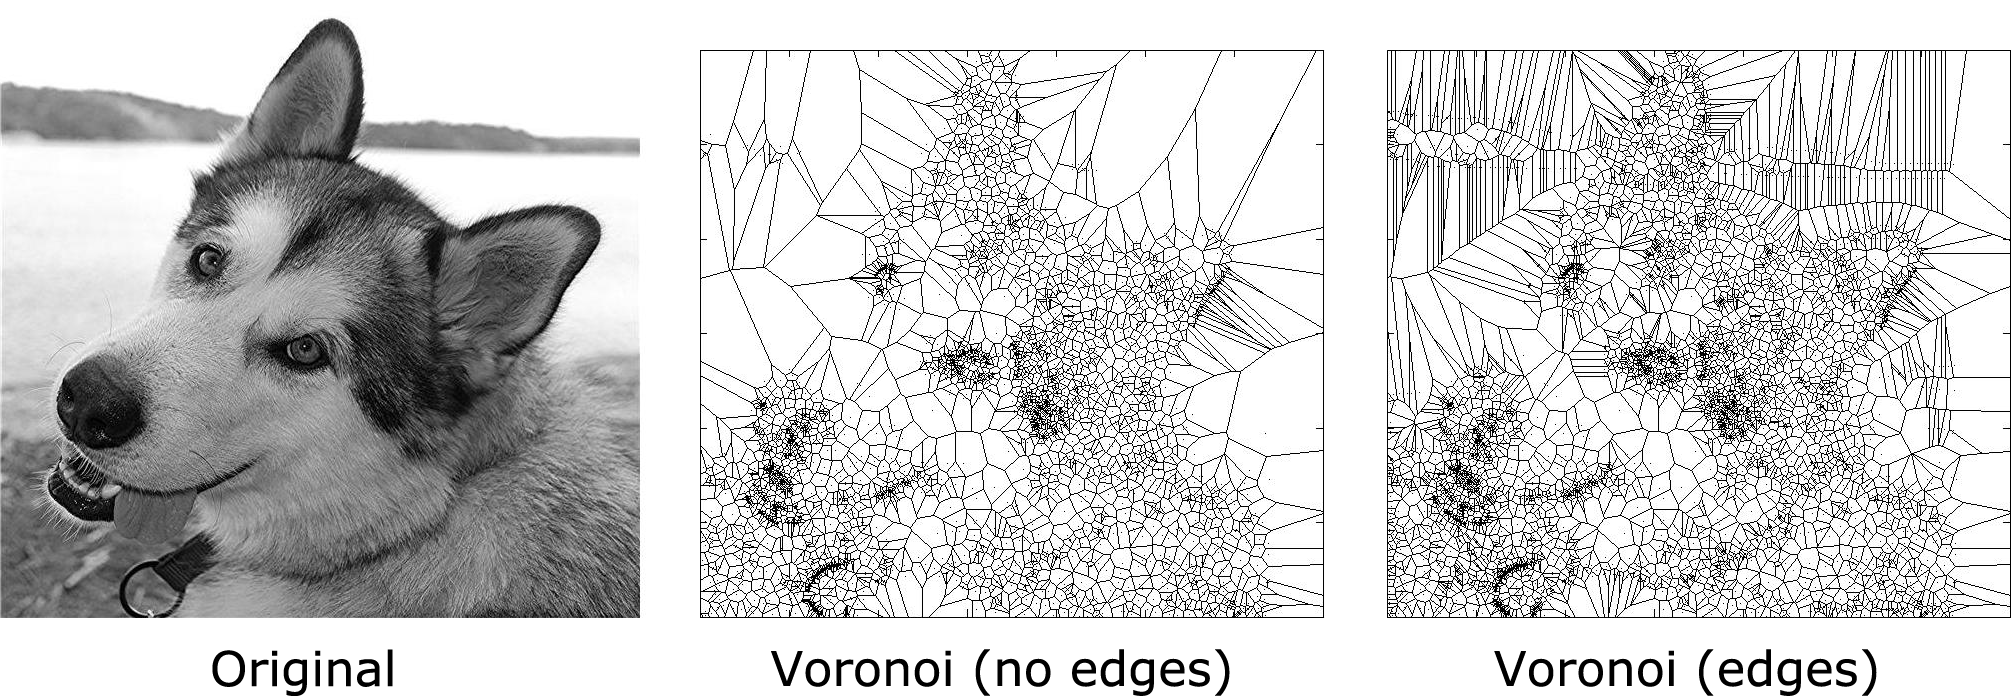 Voronoi art example: dog